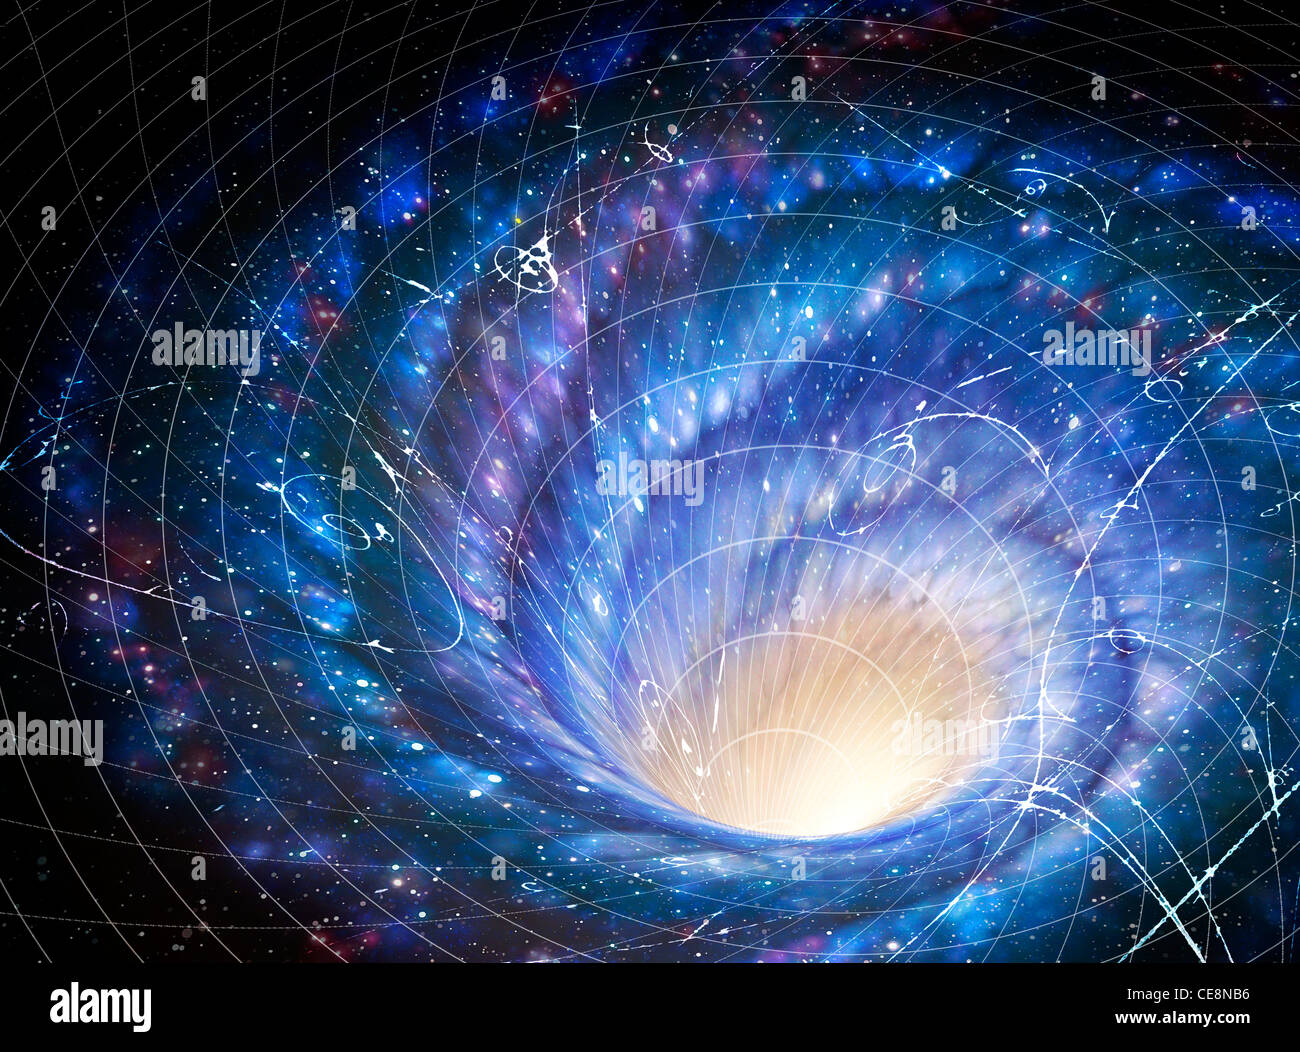 Illustration dans l'espace jacuzzi géant galaxy galaxy's effet sur l'espace image montre comment la gravité locale warps galaxy Banque D'Images